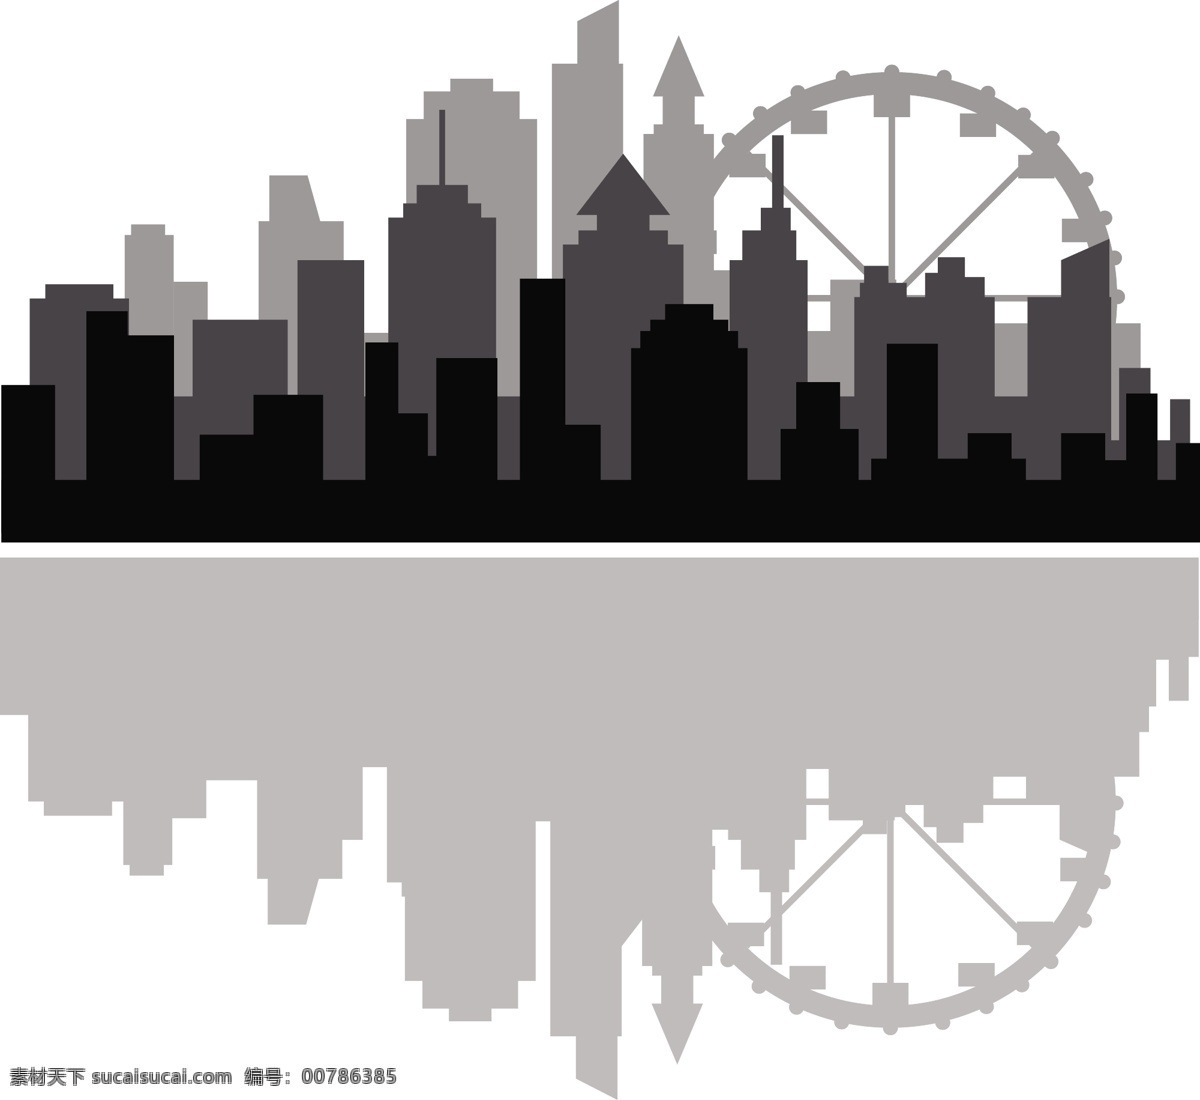 城市 剪影 矢量 图案 缩影 黑白 晦涩 摩天轮 倒影 建筑物 高楼大厦 建筑 商场